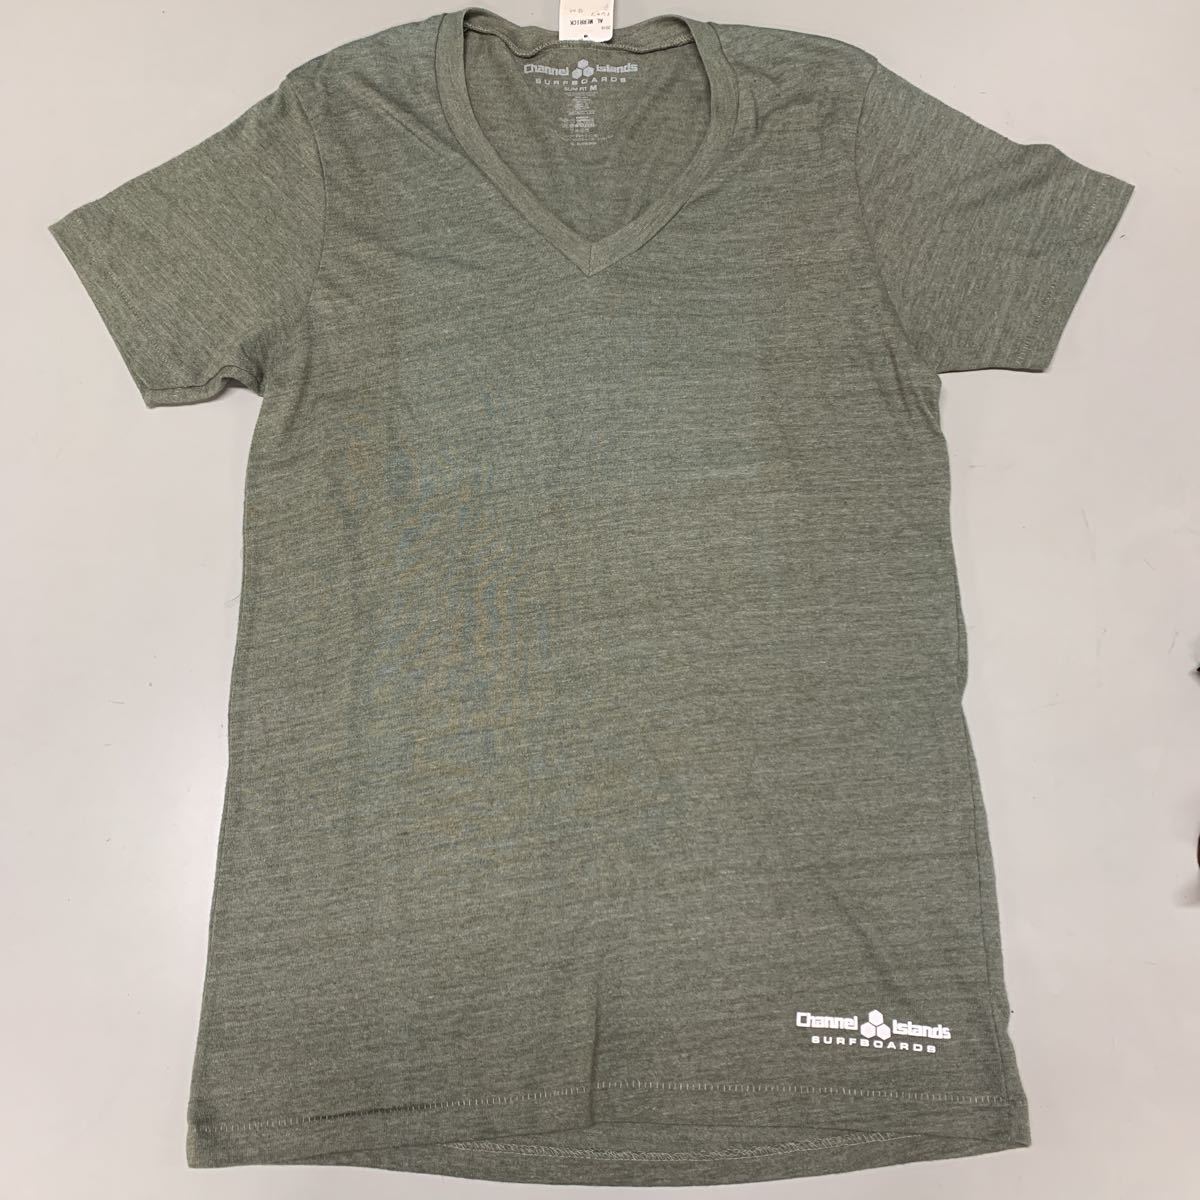 Channel Islands チャネルアイランズ Tシャツ 半袖 未使用 メンズ Mサイズ カーキ khaki サーフボード バートン Vネックの画像1